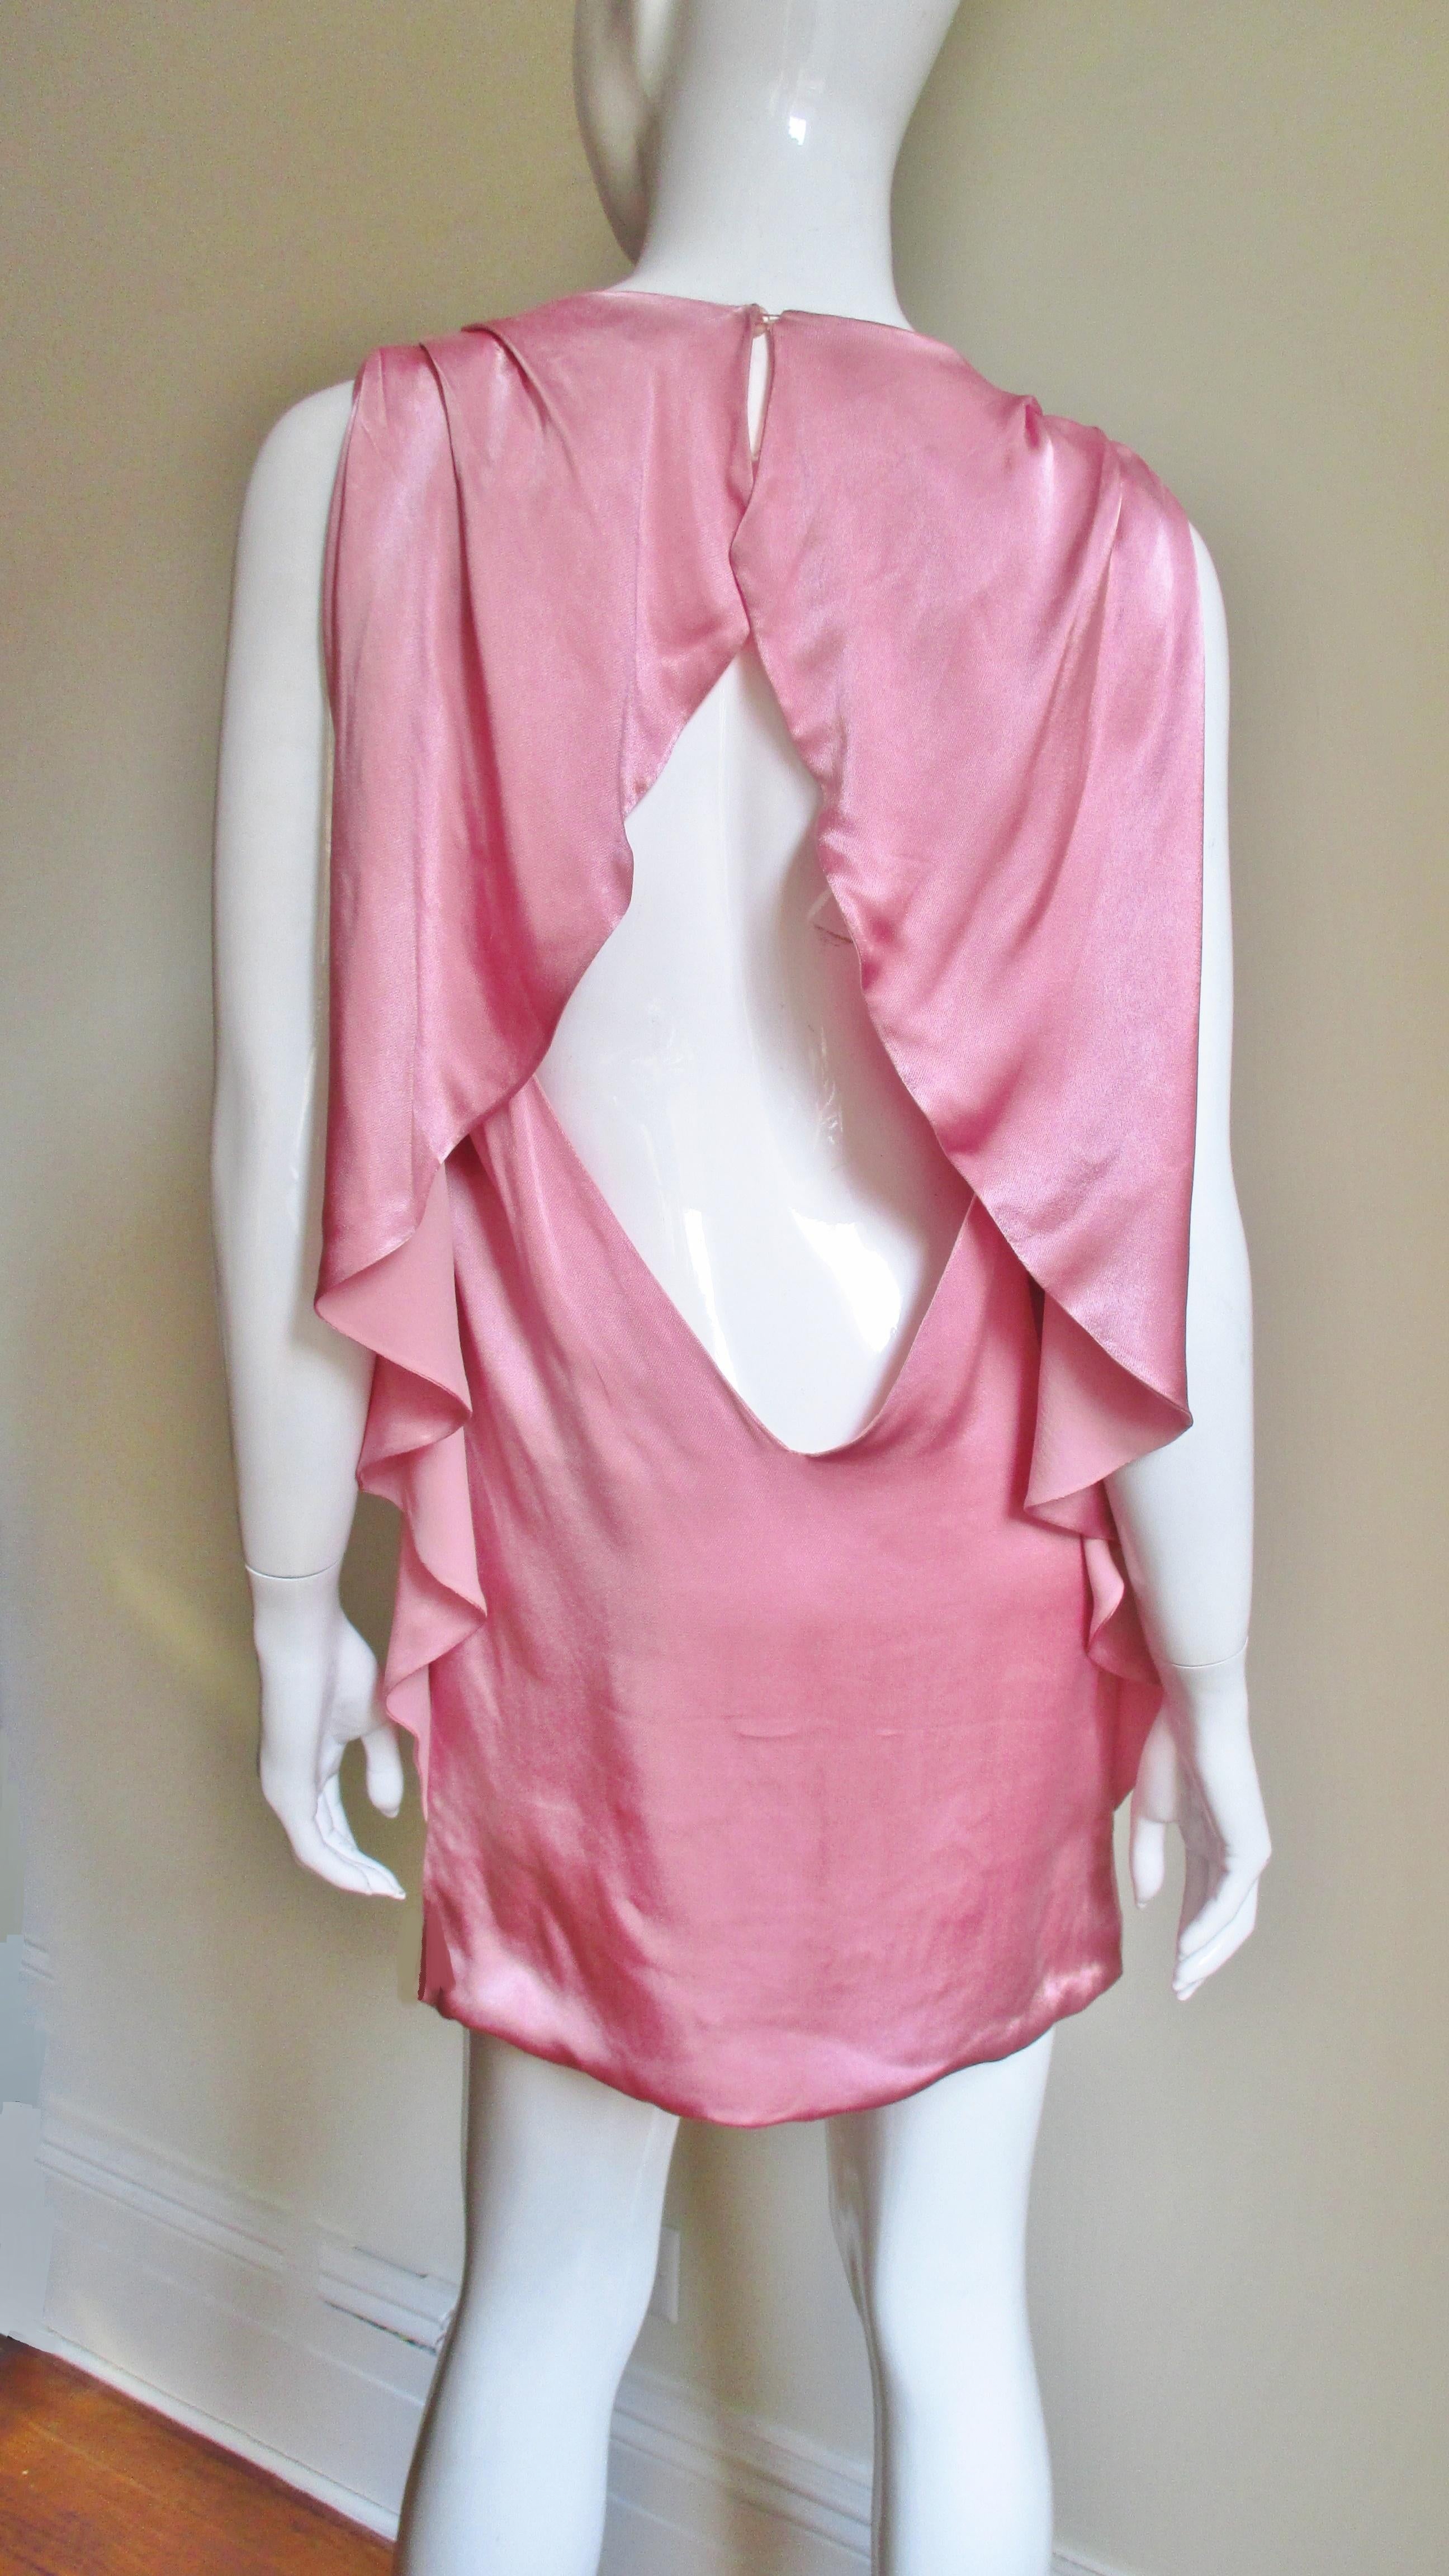 Une belle robe rose en soie de Versace.  Il s'agit d'un simple fourreau sans manches vu de face. Le dos est exposé des épaules au bas du dos, à l'exception des drapés qui l'encadrent sur les épaules et les côtés de la robe.  La robe est doublée en